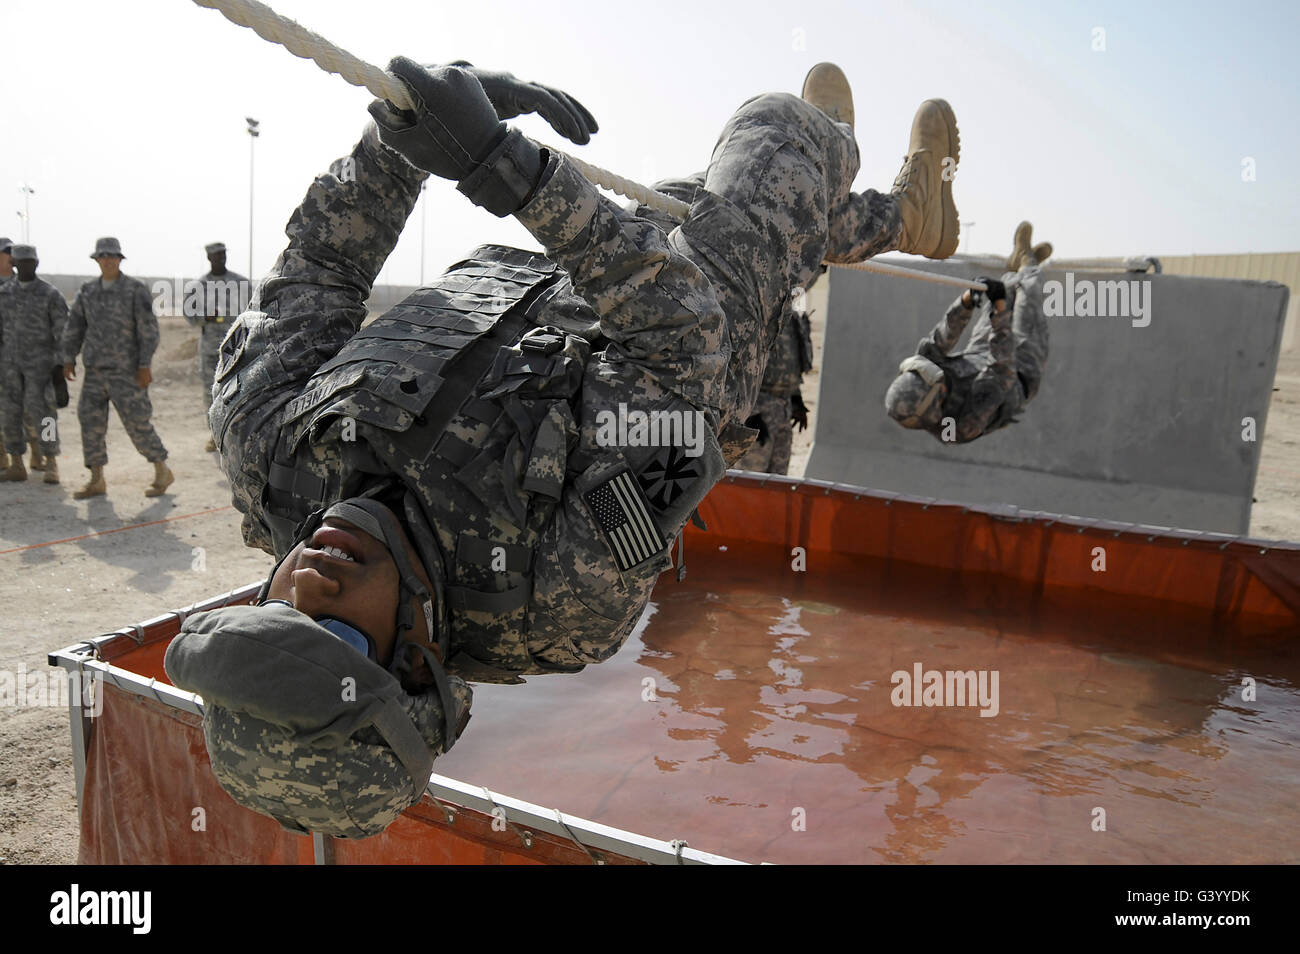 El especialista del ejército usa una cuerda de 15 pies para cruzar un obstáculo de agua. Foto de stock